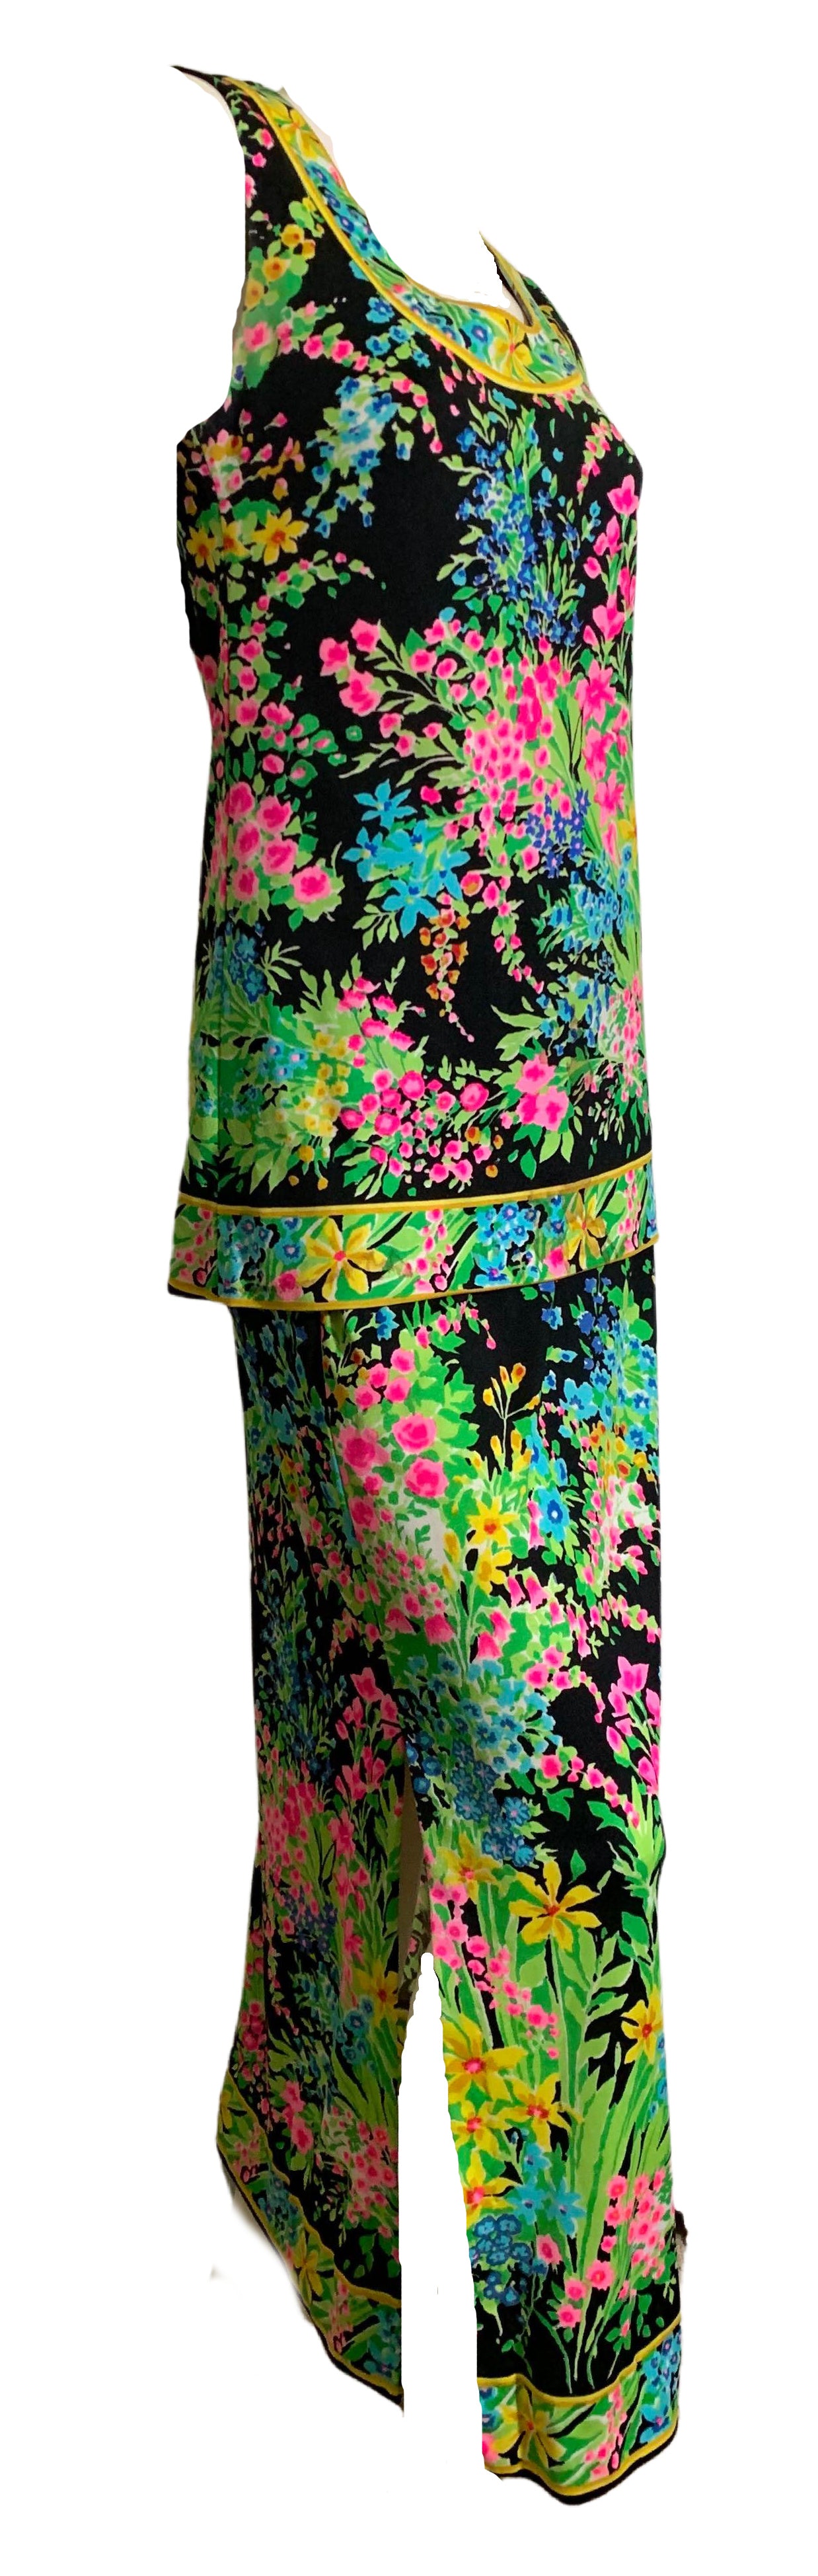 Mr. Dino Floral Print Tunic and Skirt Set Dress circa 1960s